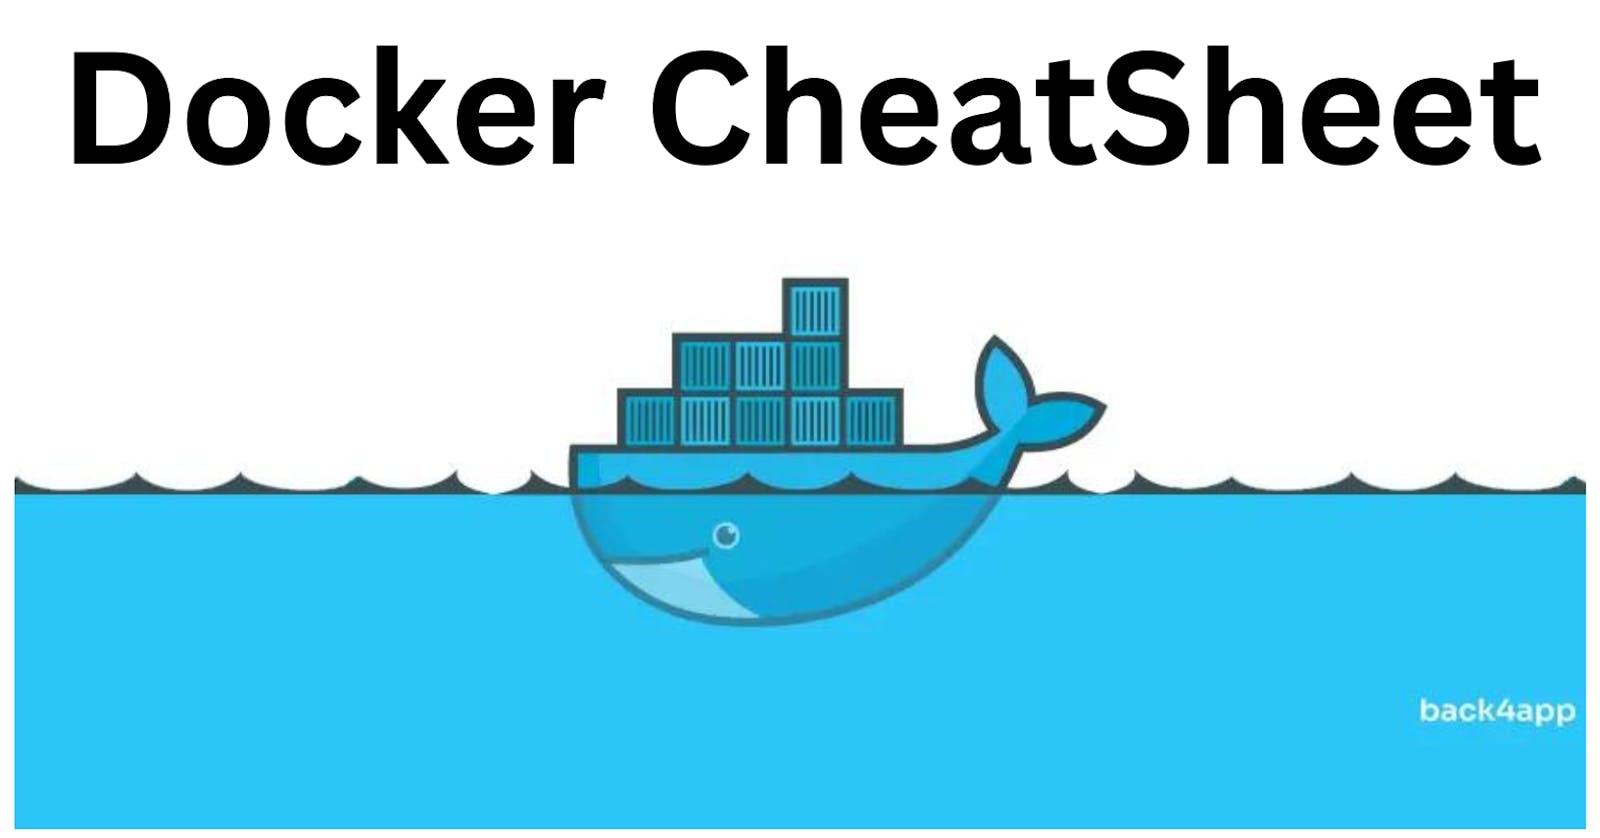 Docker Cheatsheet: Compiling My Docker Knowledge.